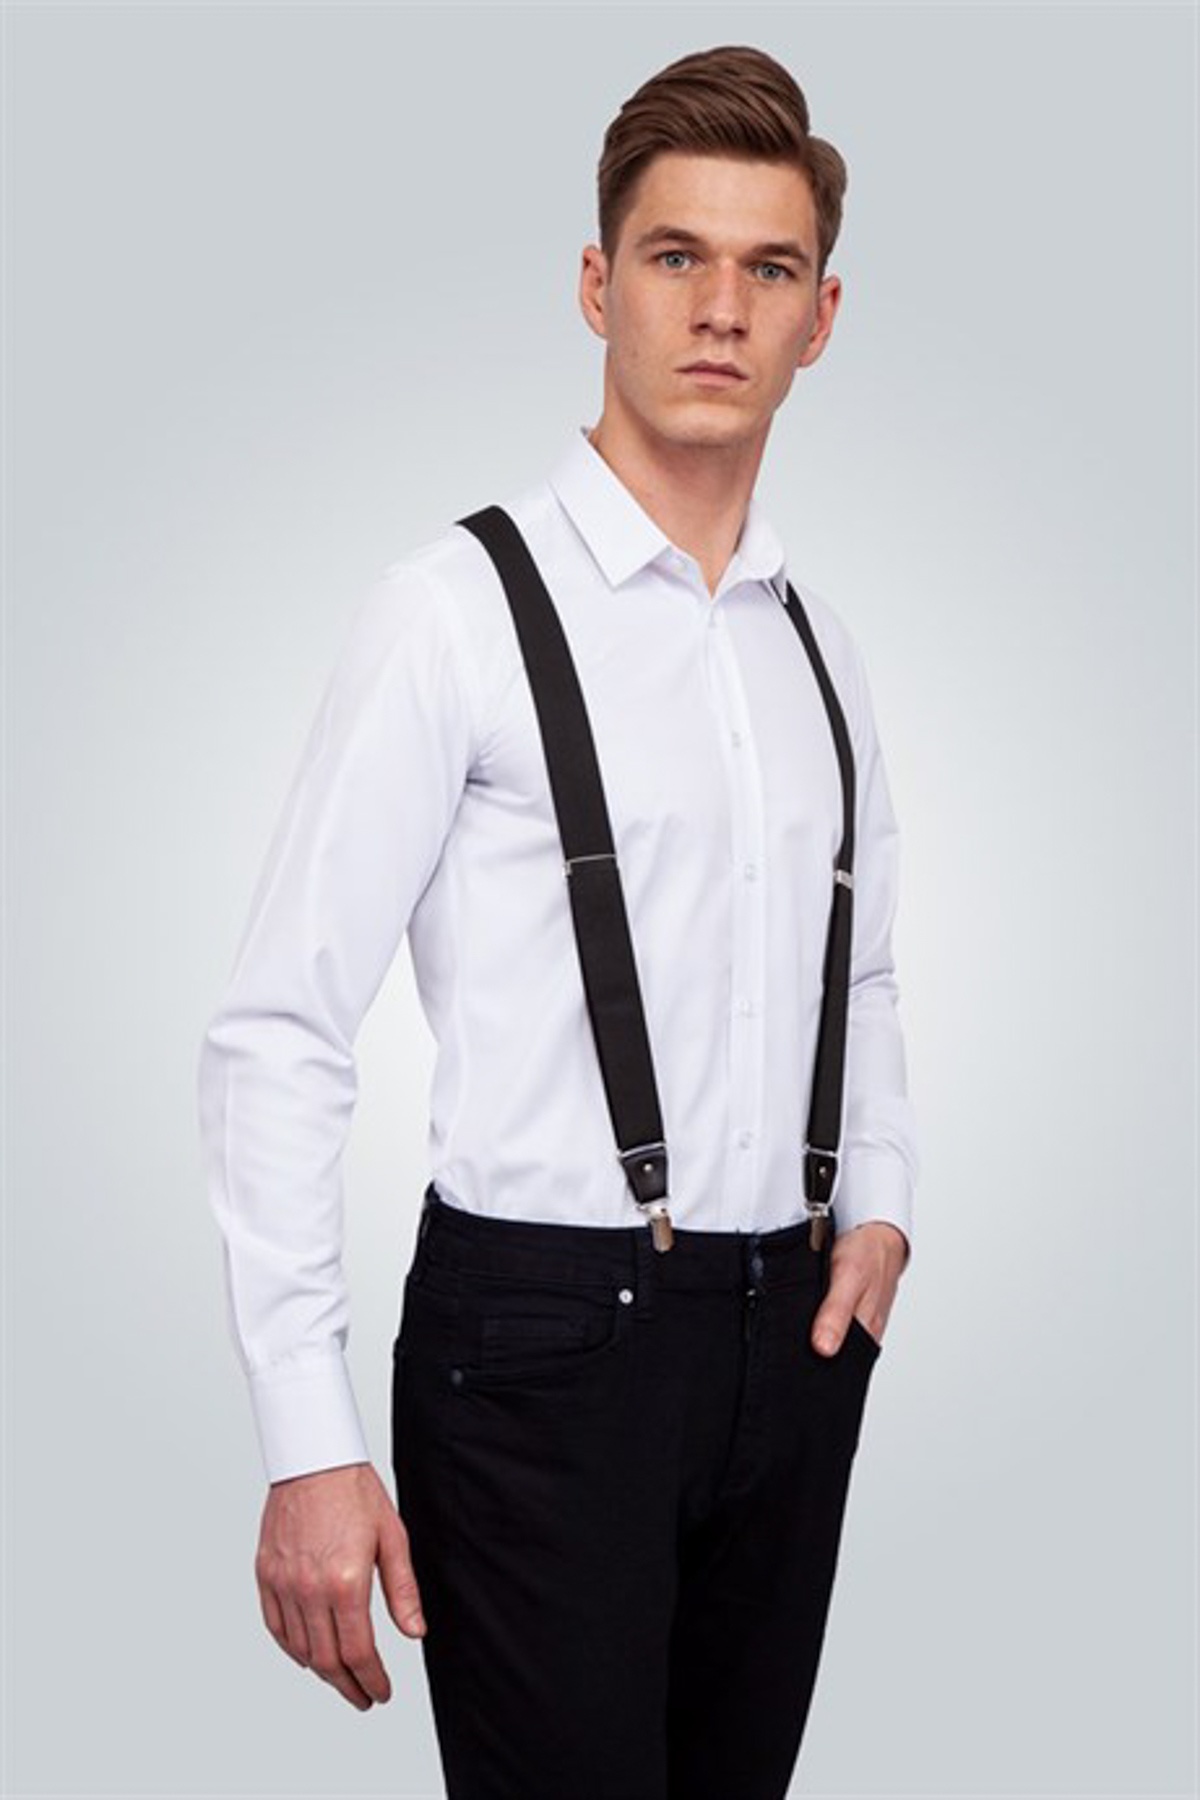 Plain Black Suspenders